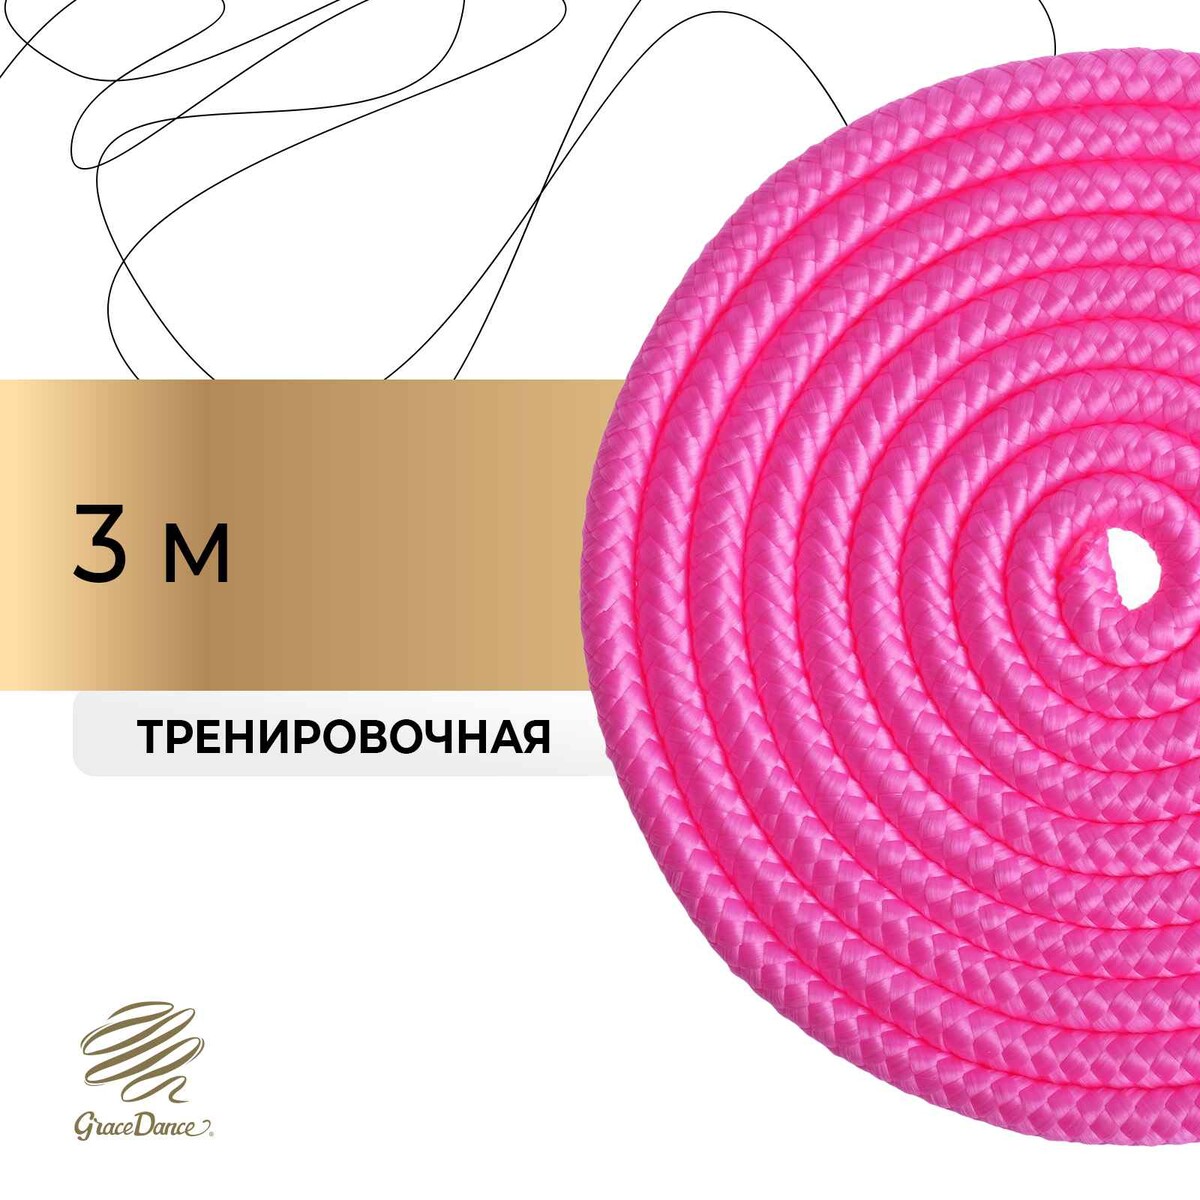 Скакалка для художественной гимнастики grace dance, 3 м, цвет розовый скакалка гимнастическая с люрексом body form bf sk04 bf jrgl01 3м 180гр розовый